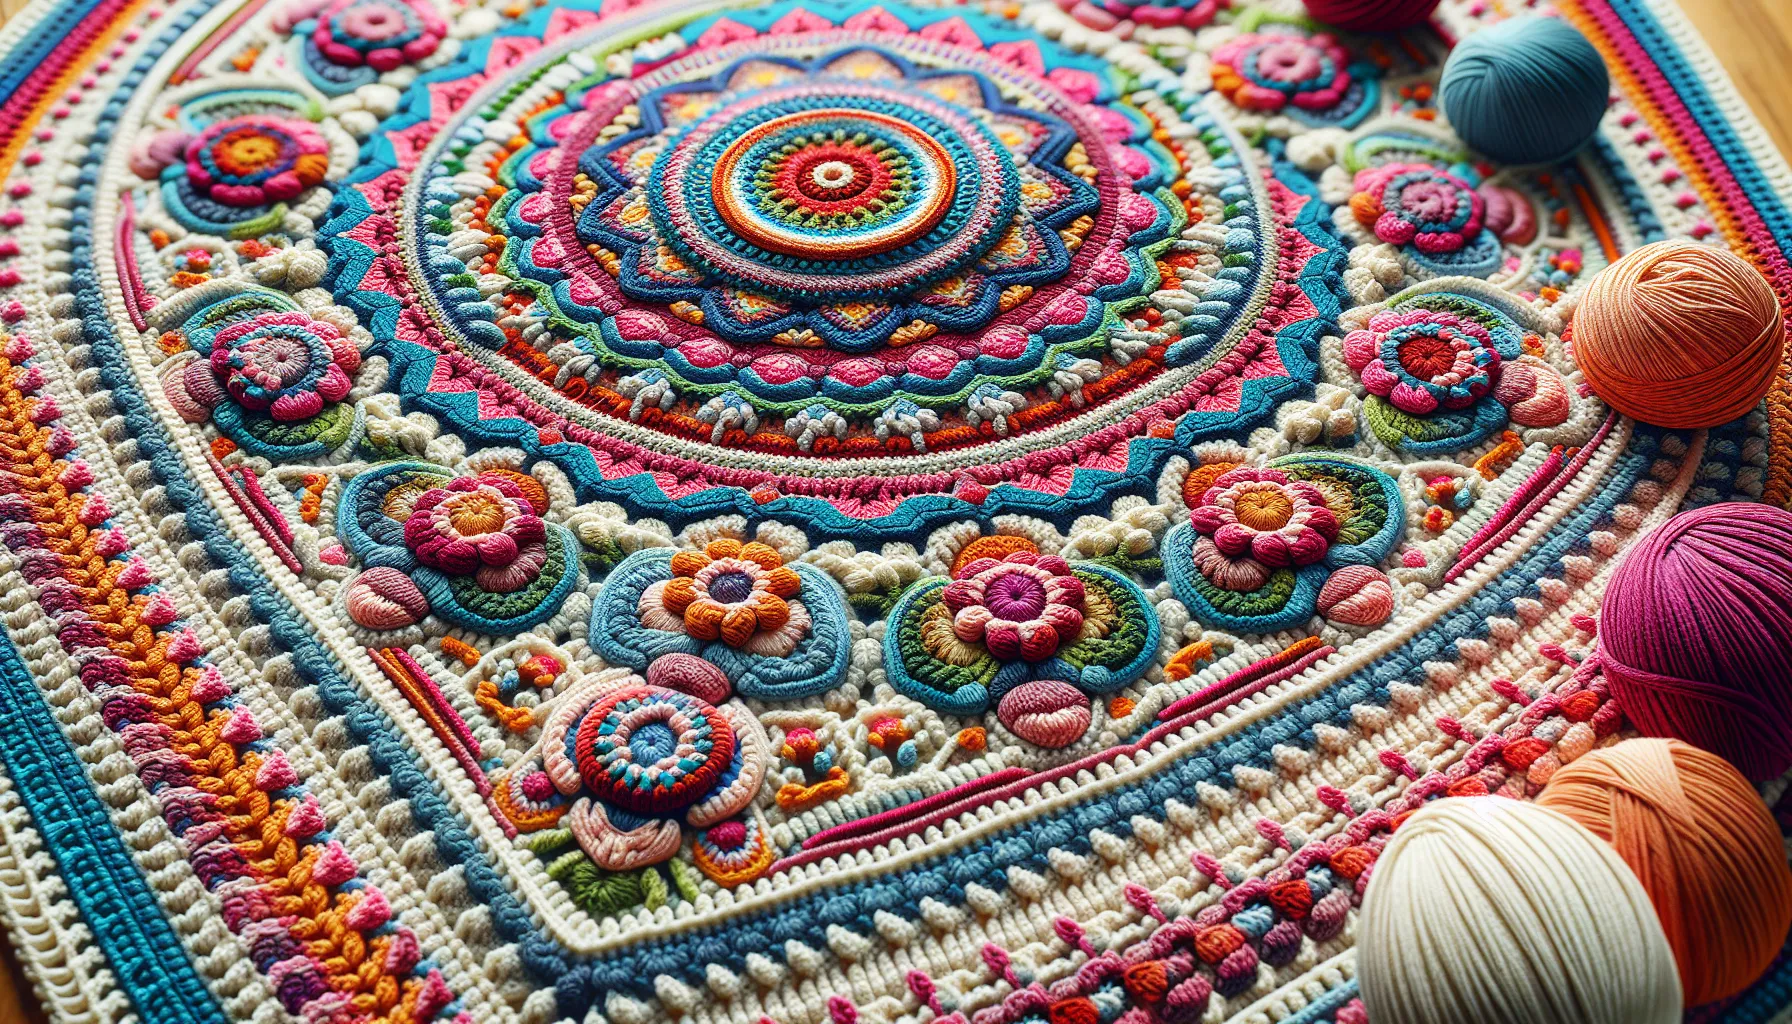 Um gráfico de tapete em crochê é uma representação visual do padrão ou design que será seguido para criar o tapete. Ele mostra as diferentes etapas e pontos utilizados, permitindo que os crocheteiros sigam o gráfico para reproduzir o tapete.